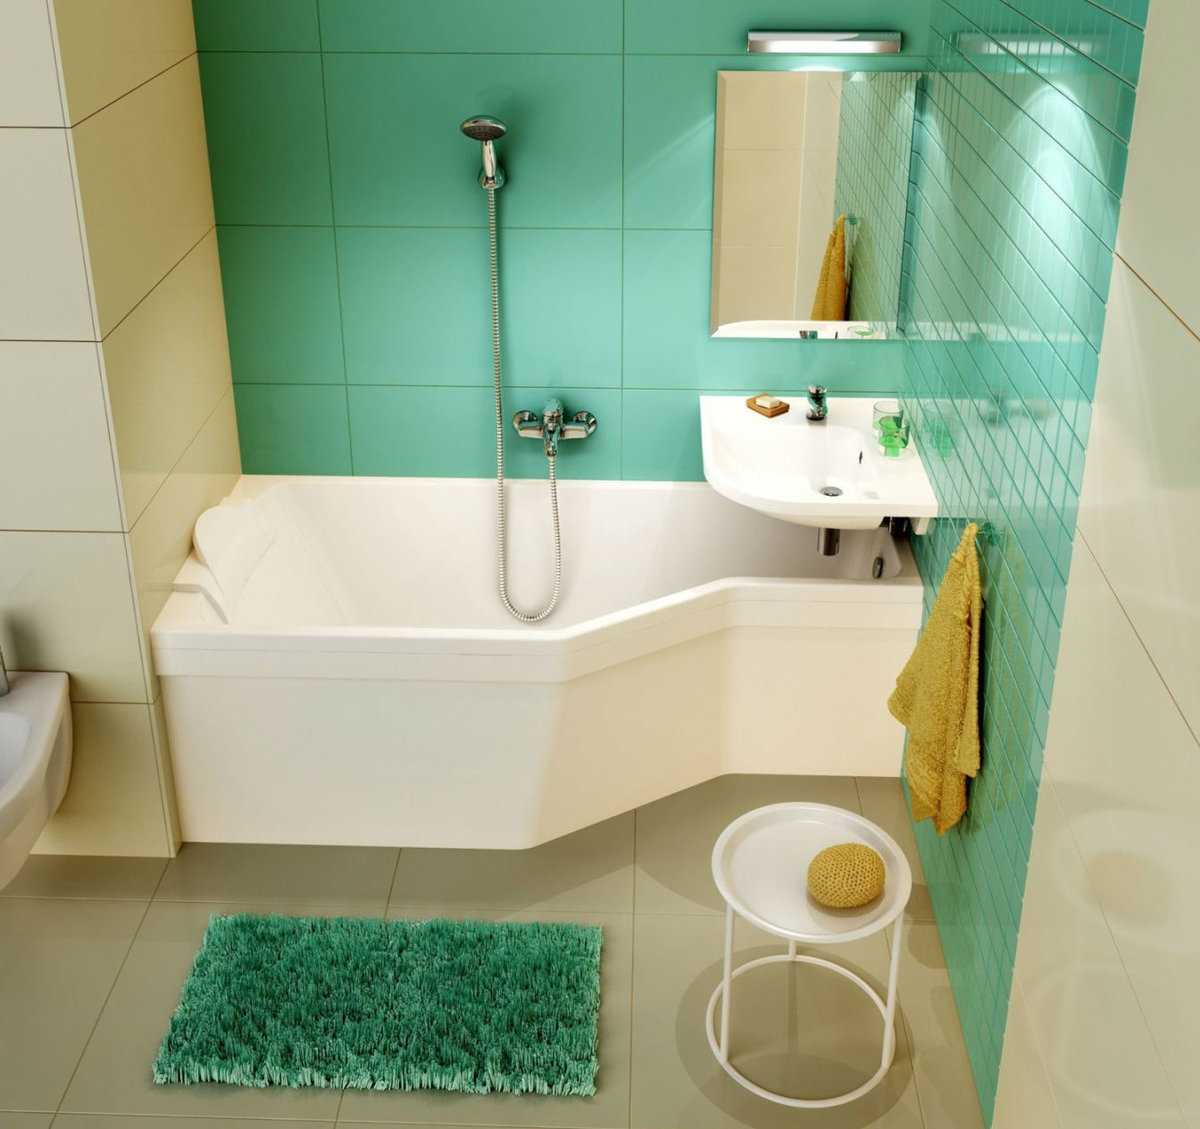 Ассиметричная ванная в угол или прямой формы из чугуна или акрила: какие размеры трапециевидной стандартной, самой большой и маленькой формы